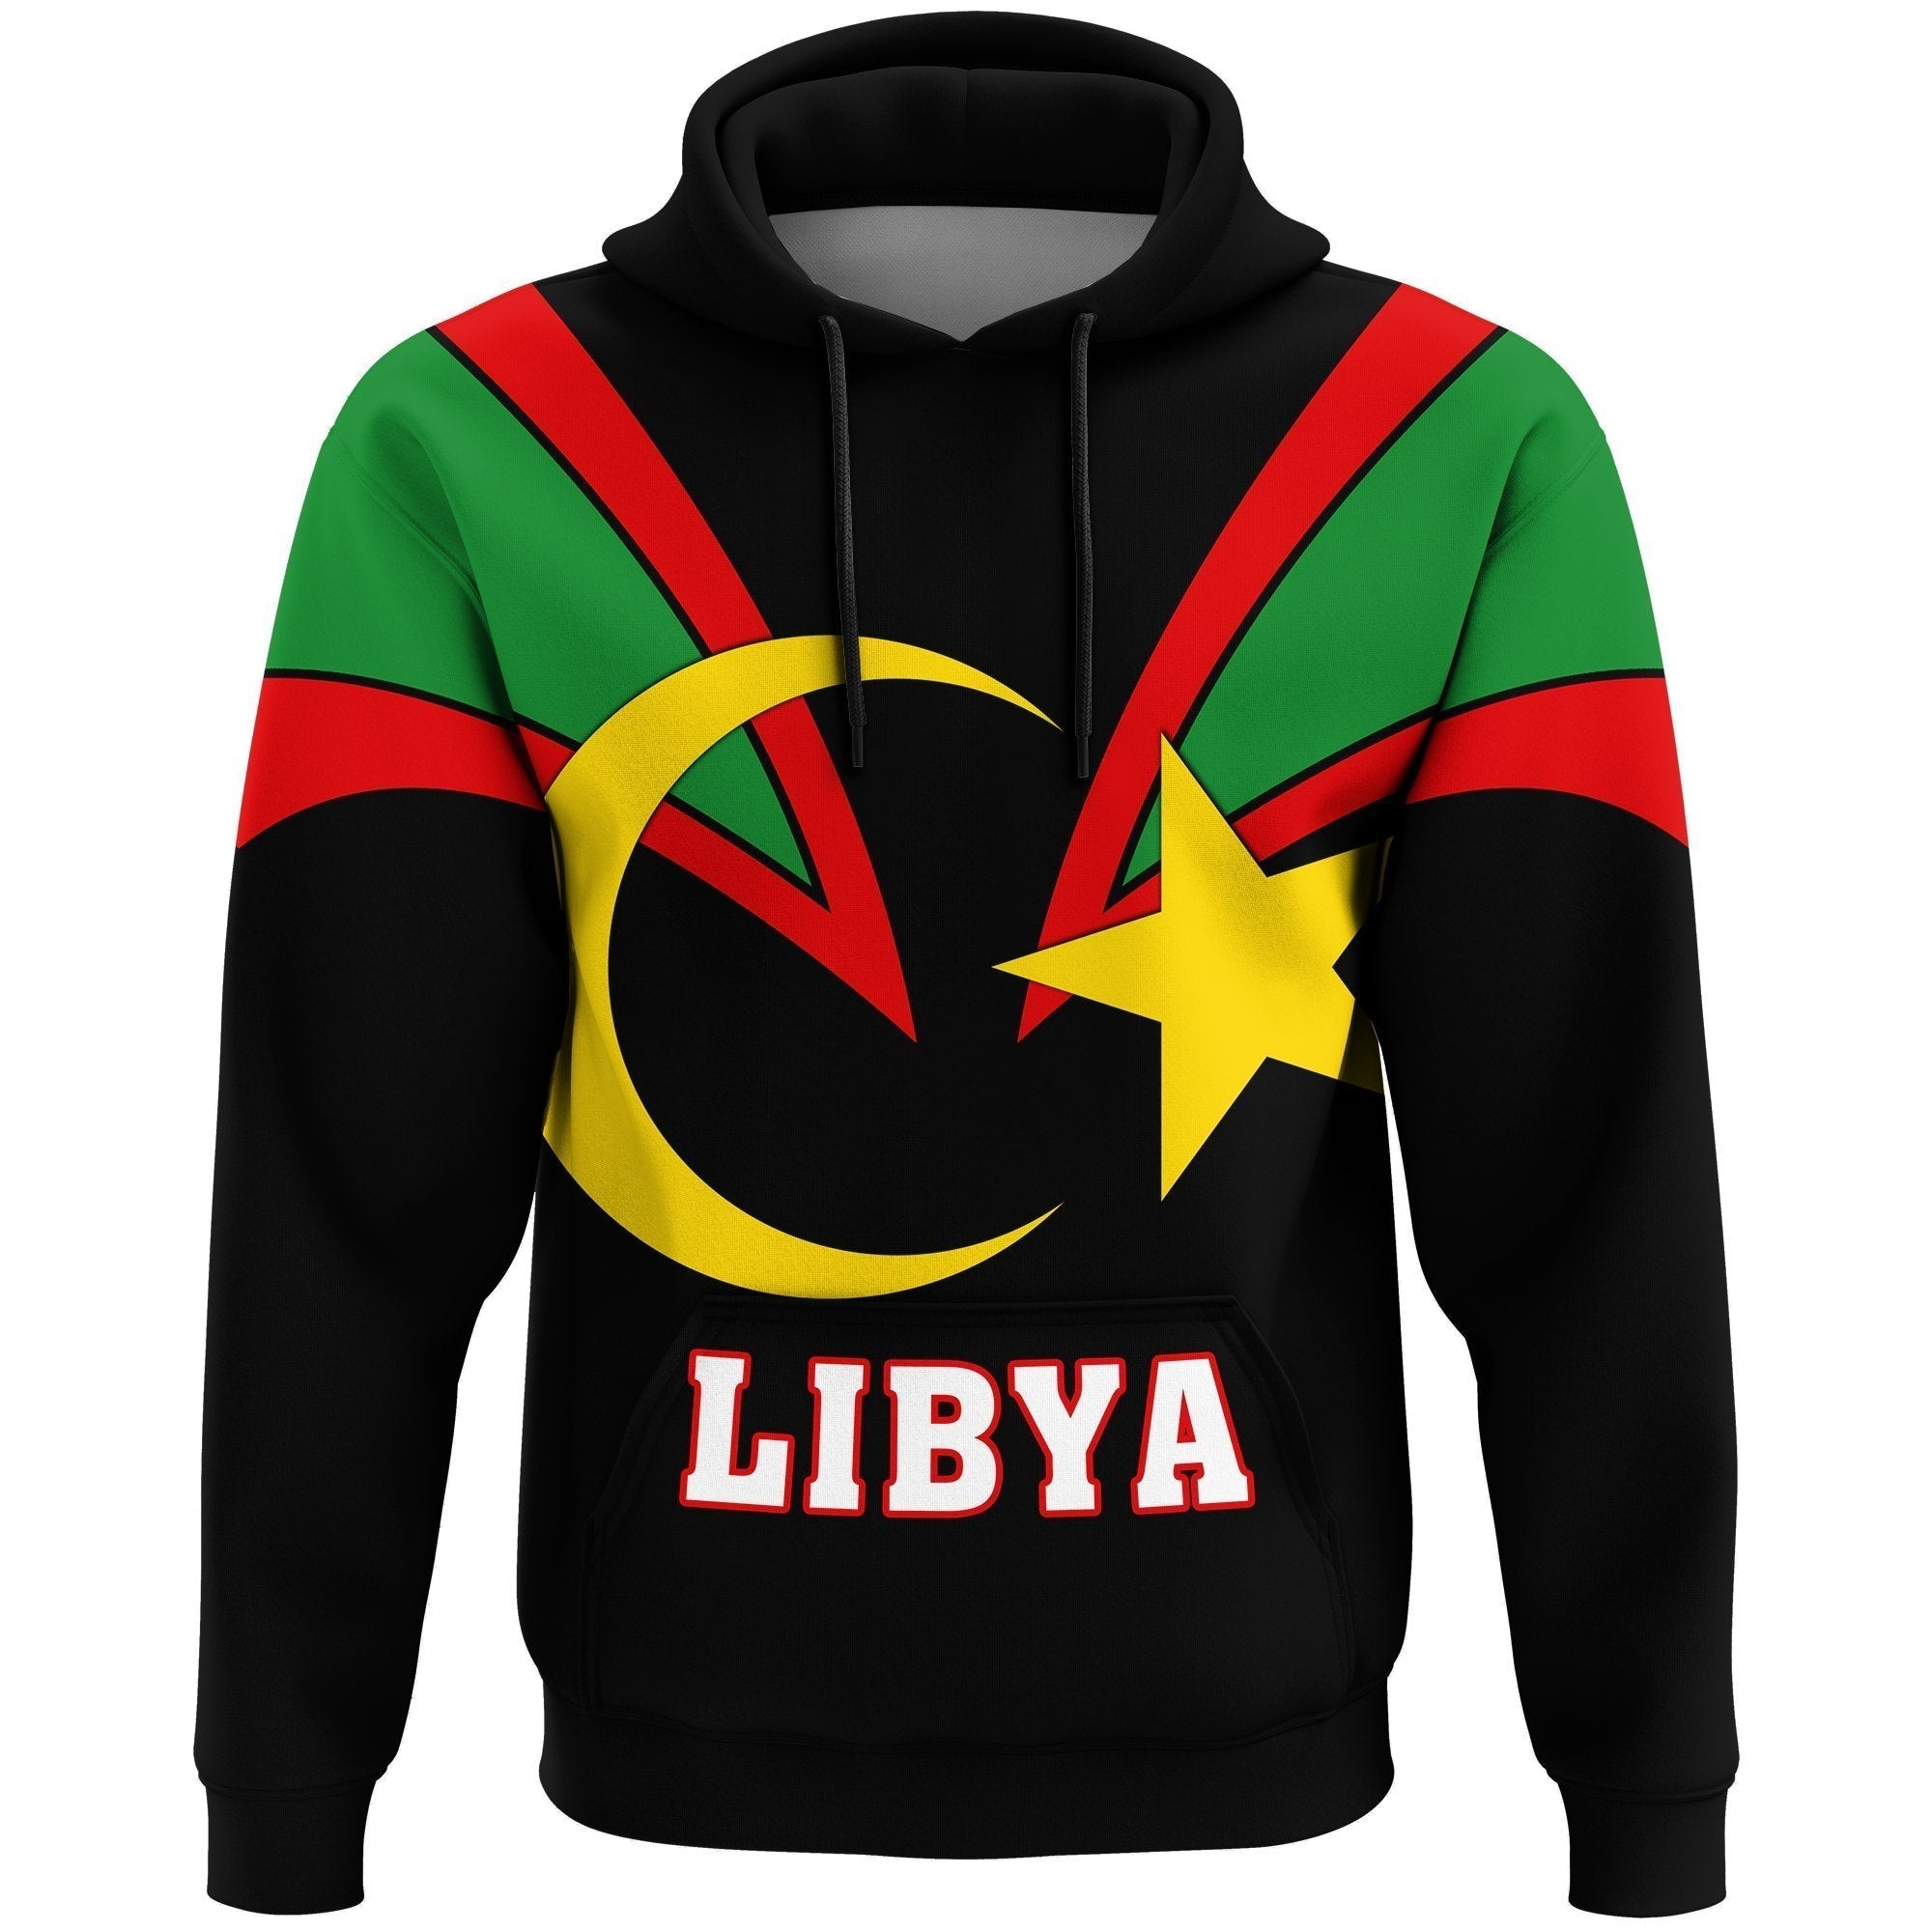 wonder-print-shop-hoodie-libya-hoodie-tusk-style